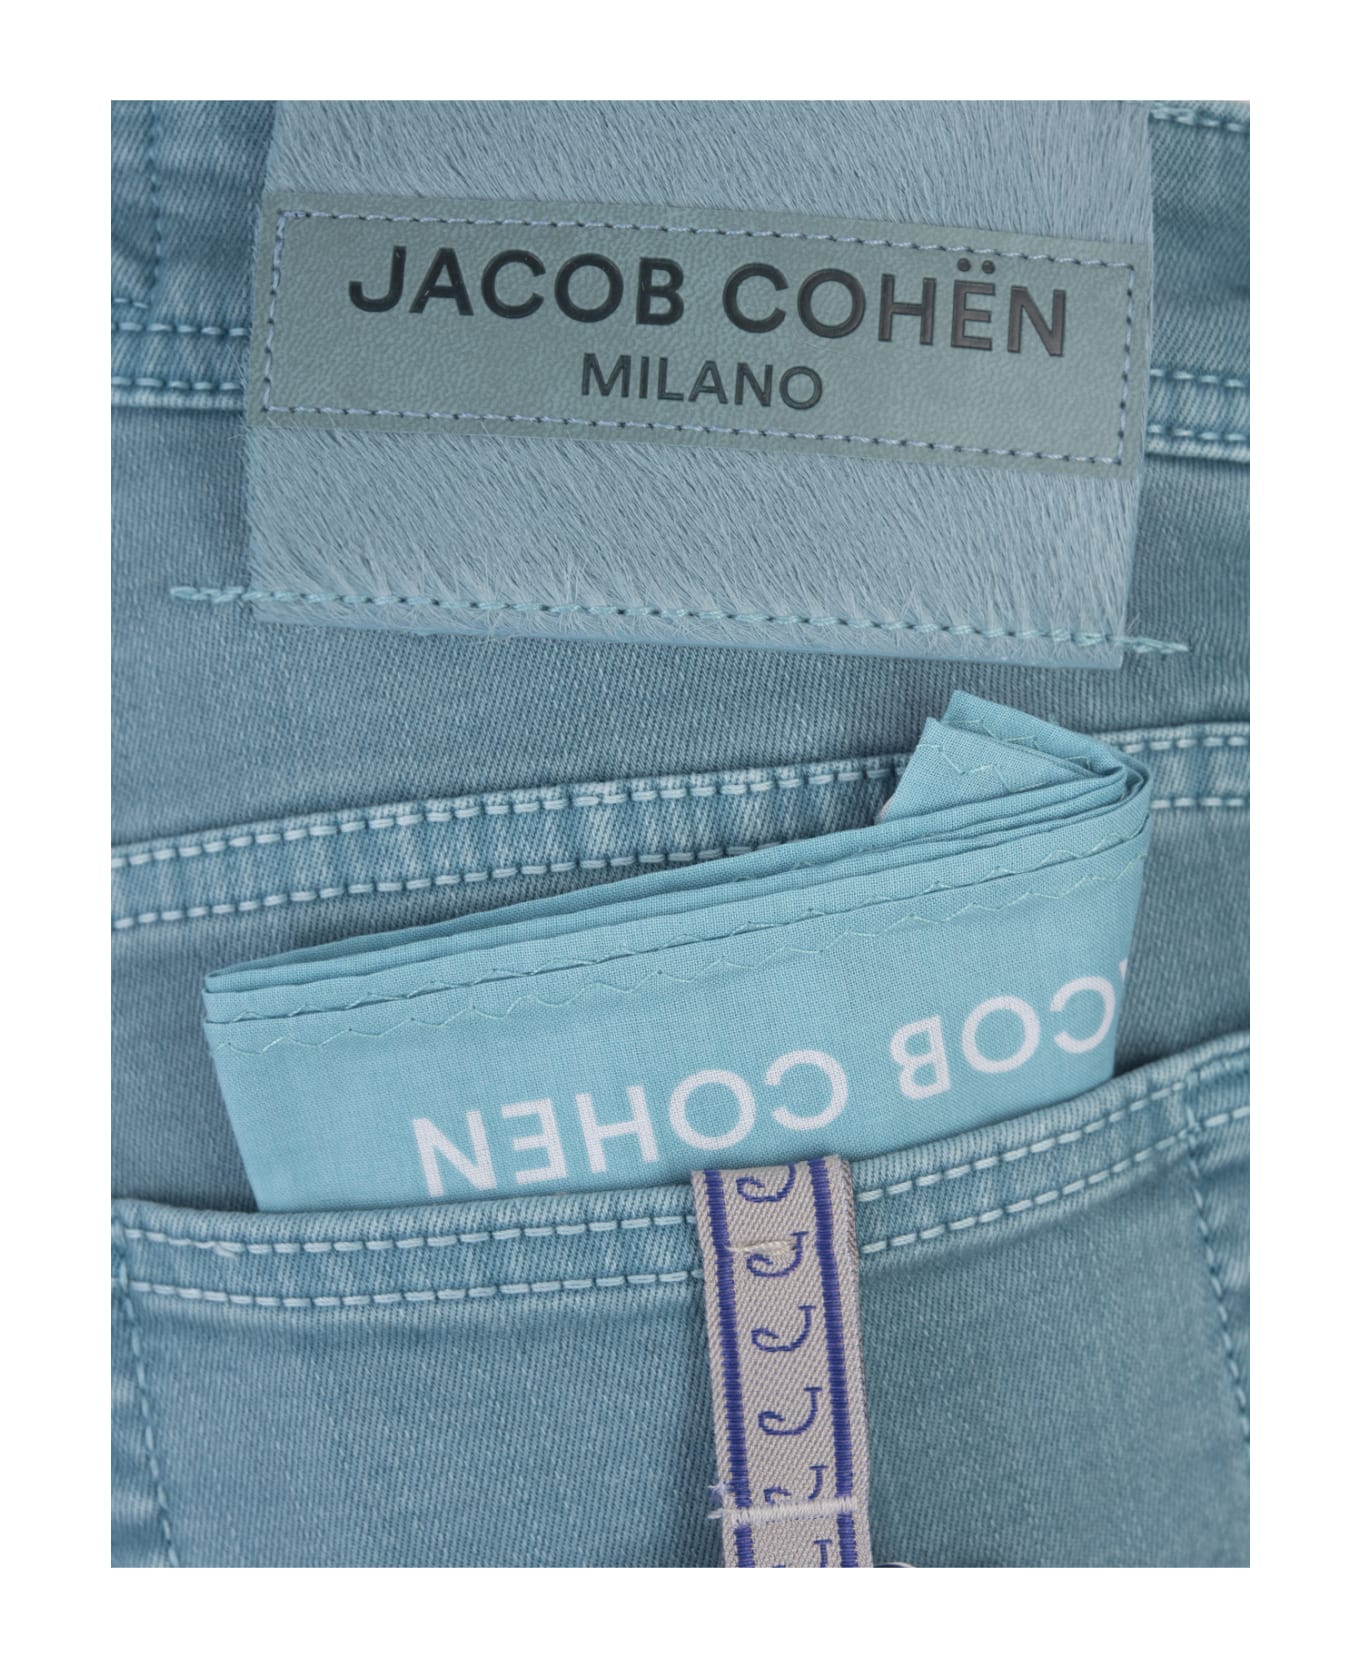 Jacob Cohen Nick Slim Fit Jeans In Teal Blue Denim - Blue